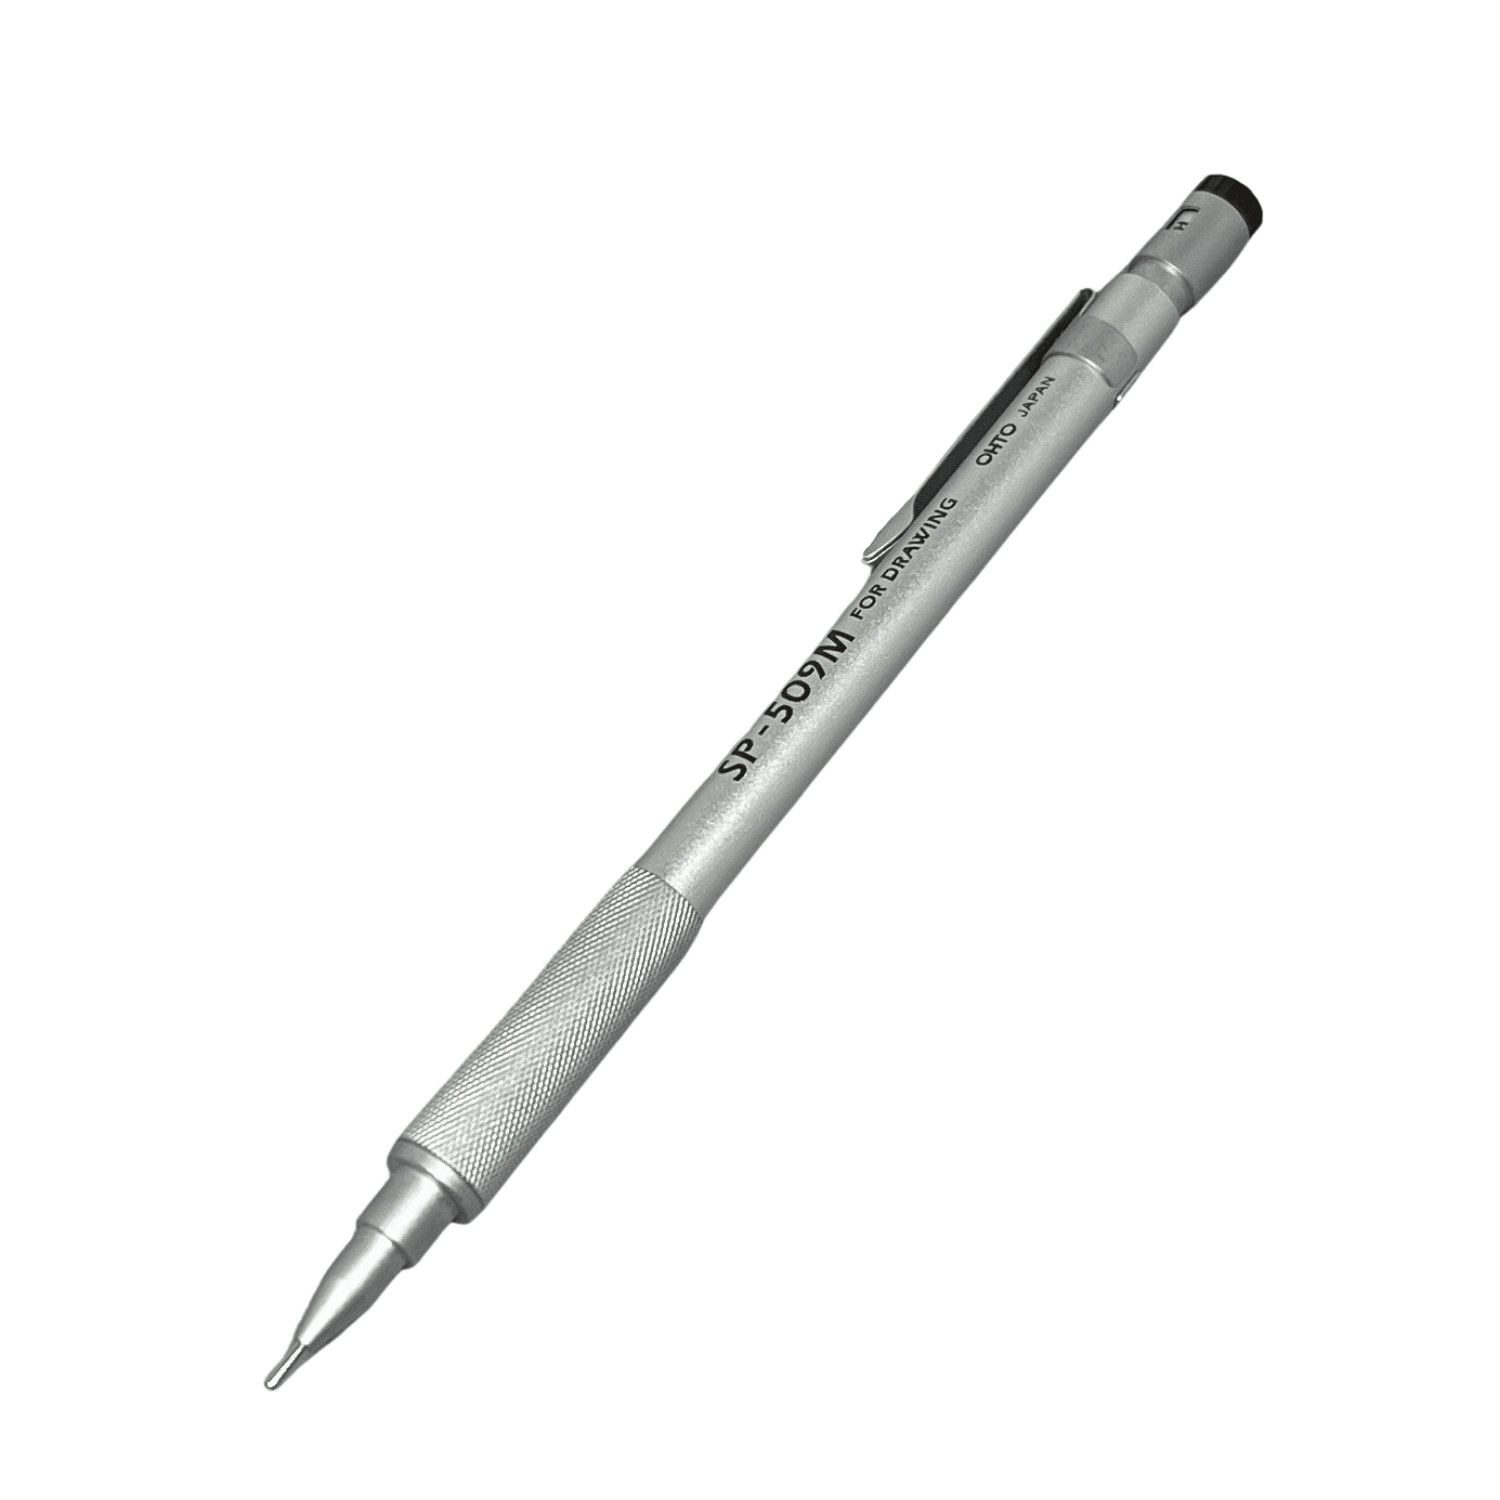 Ohto Sp 509 Mechanical Pencil 0.9 MM